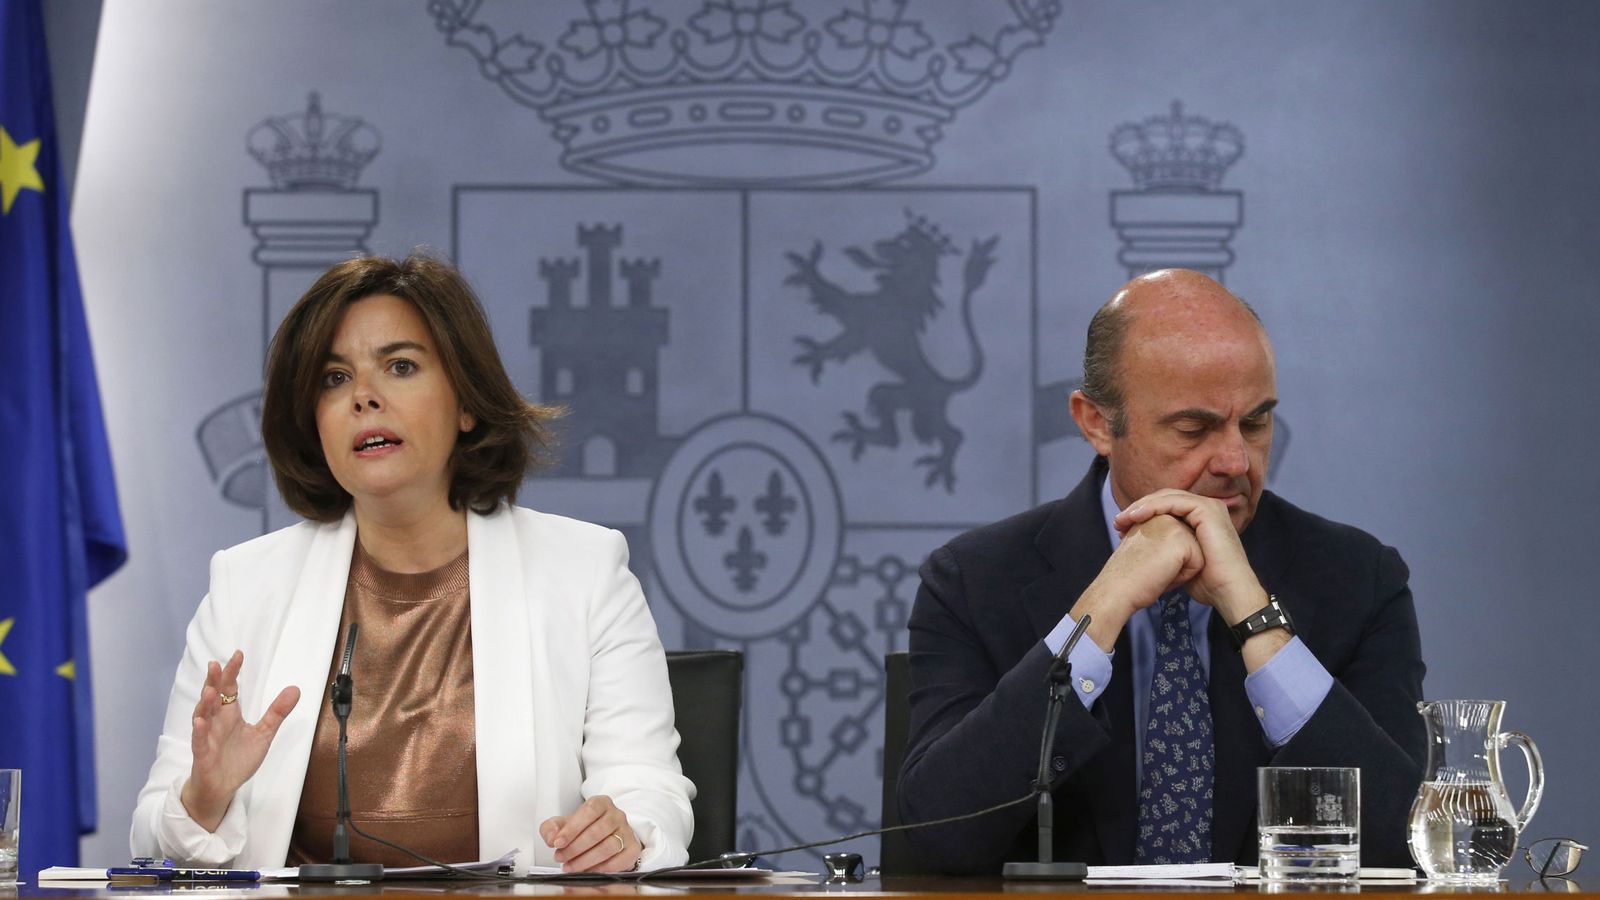 Foto: La vicepresidenta del Gobierno en funciones, Soraya Sáenz de Santamaría, y el ministro de Economía en funciones, Luis de Guindos, durante una rueda de prensa. (EFE)